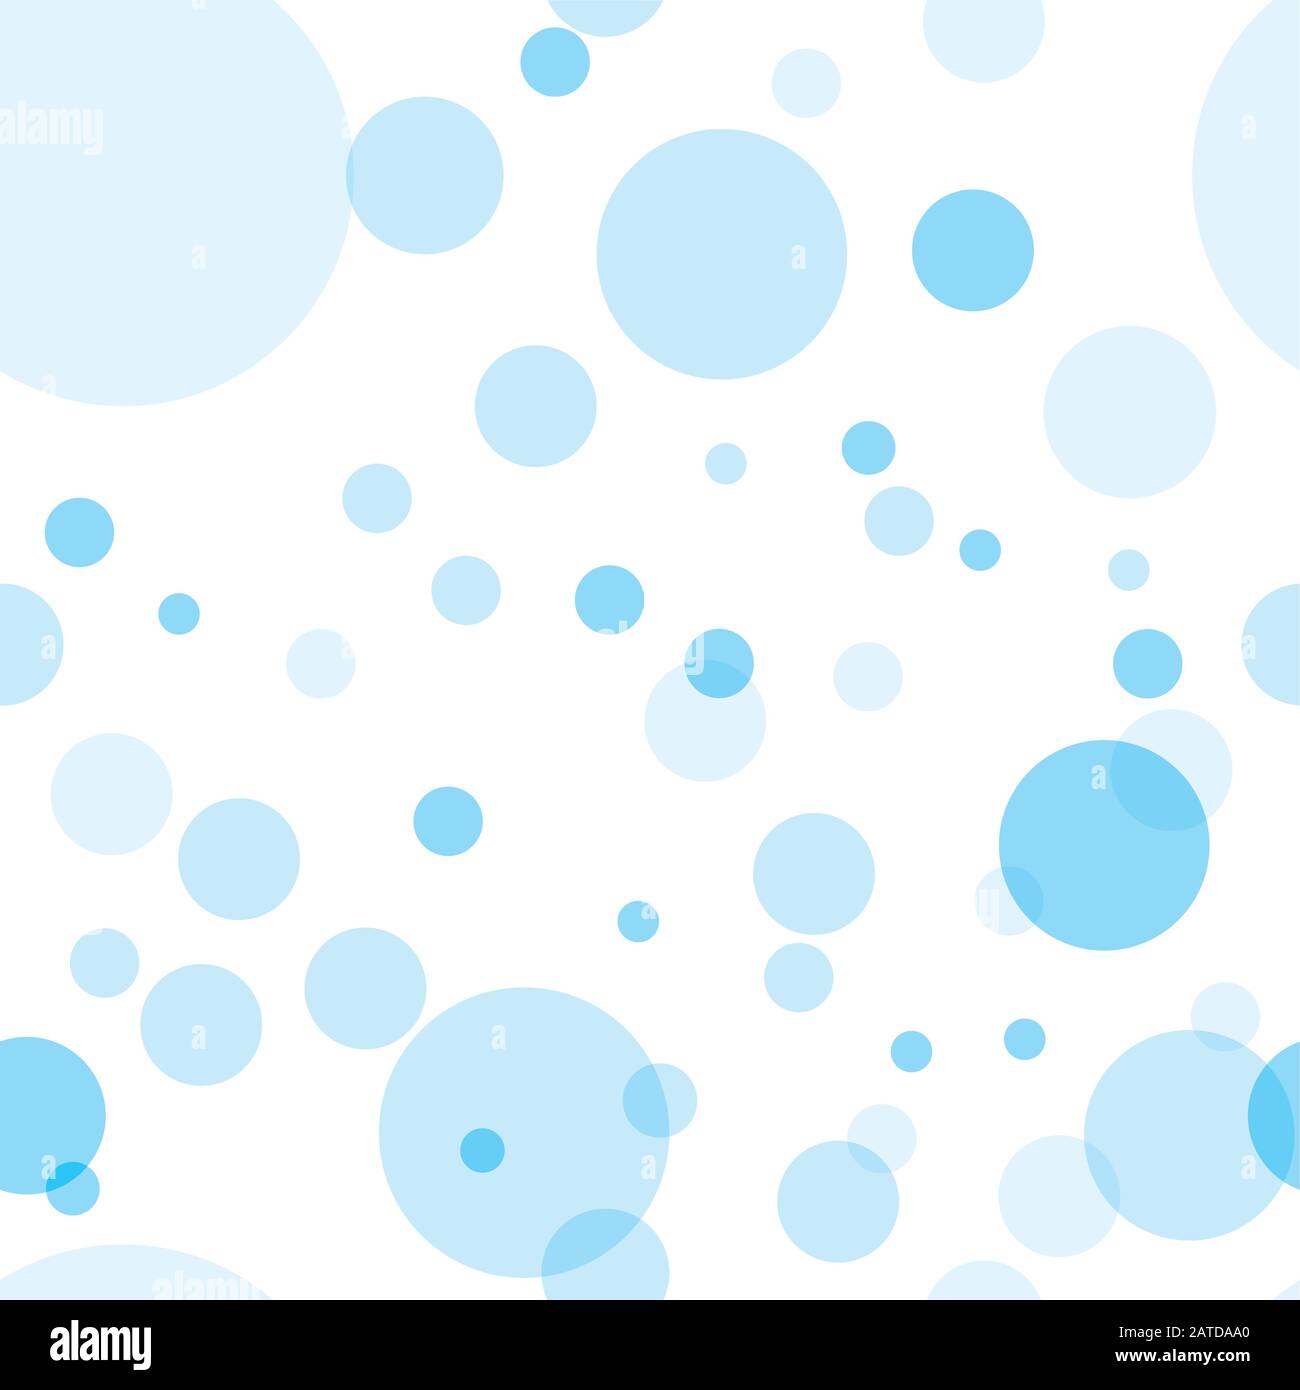 Patrón sin costuras con círculos transparentes. Burbujas de azul cielo colocadas aleatoriamente sobre fondo blanco. Ilustración fácil de editar de vectores eps10. Ilustración del Vector